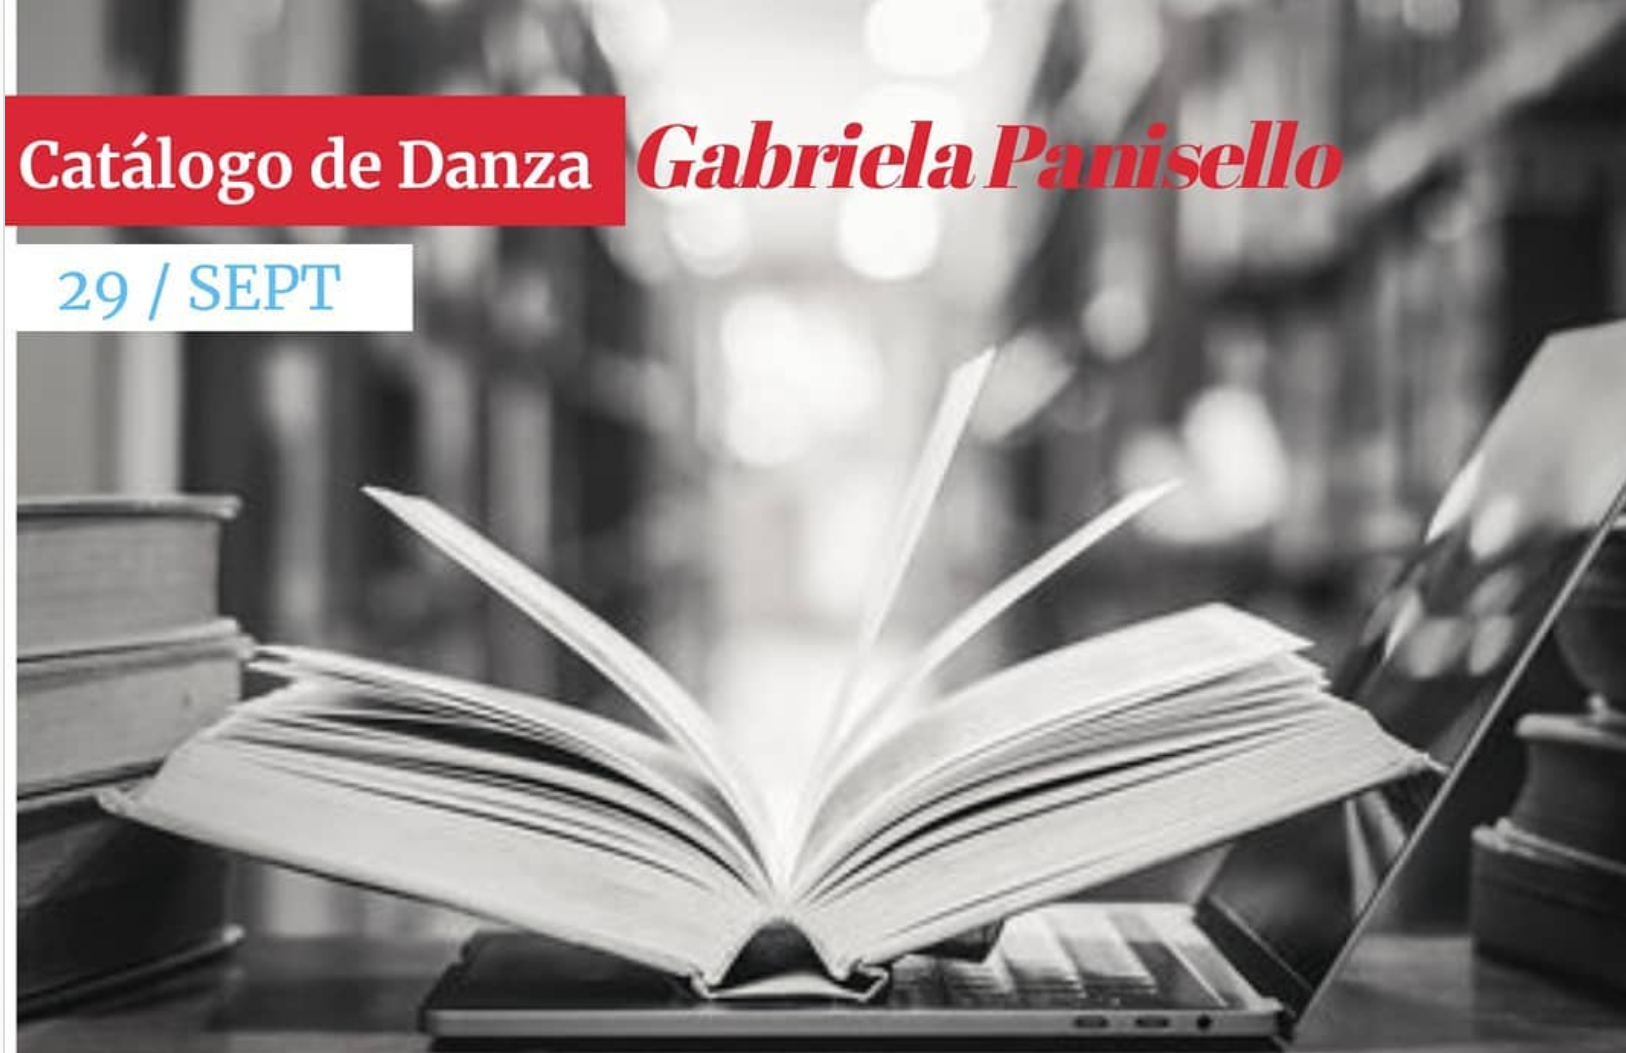 Presentación del Catálogo de Danza Gabriela Panisello